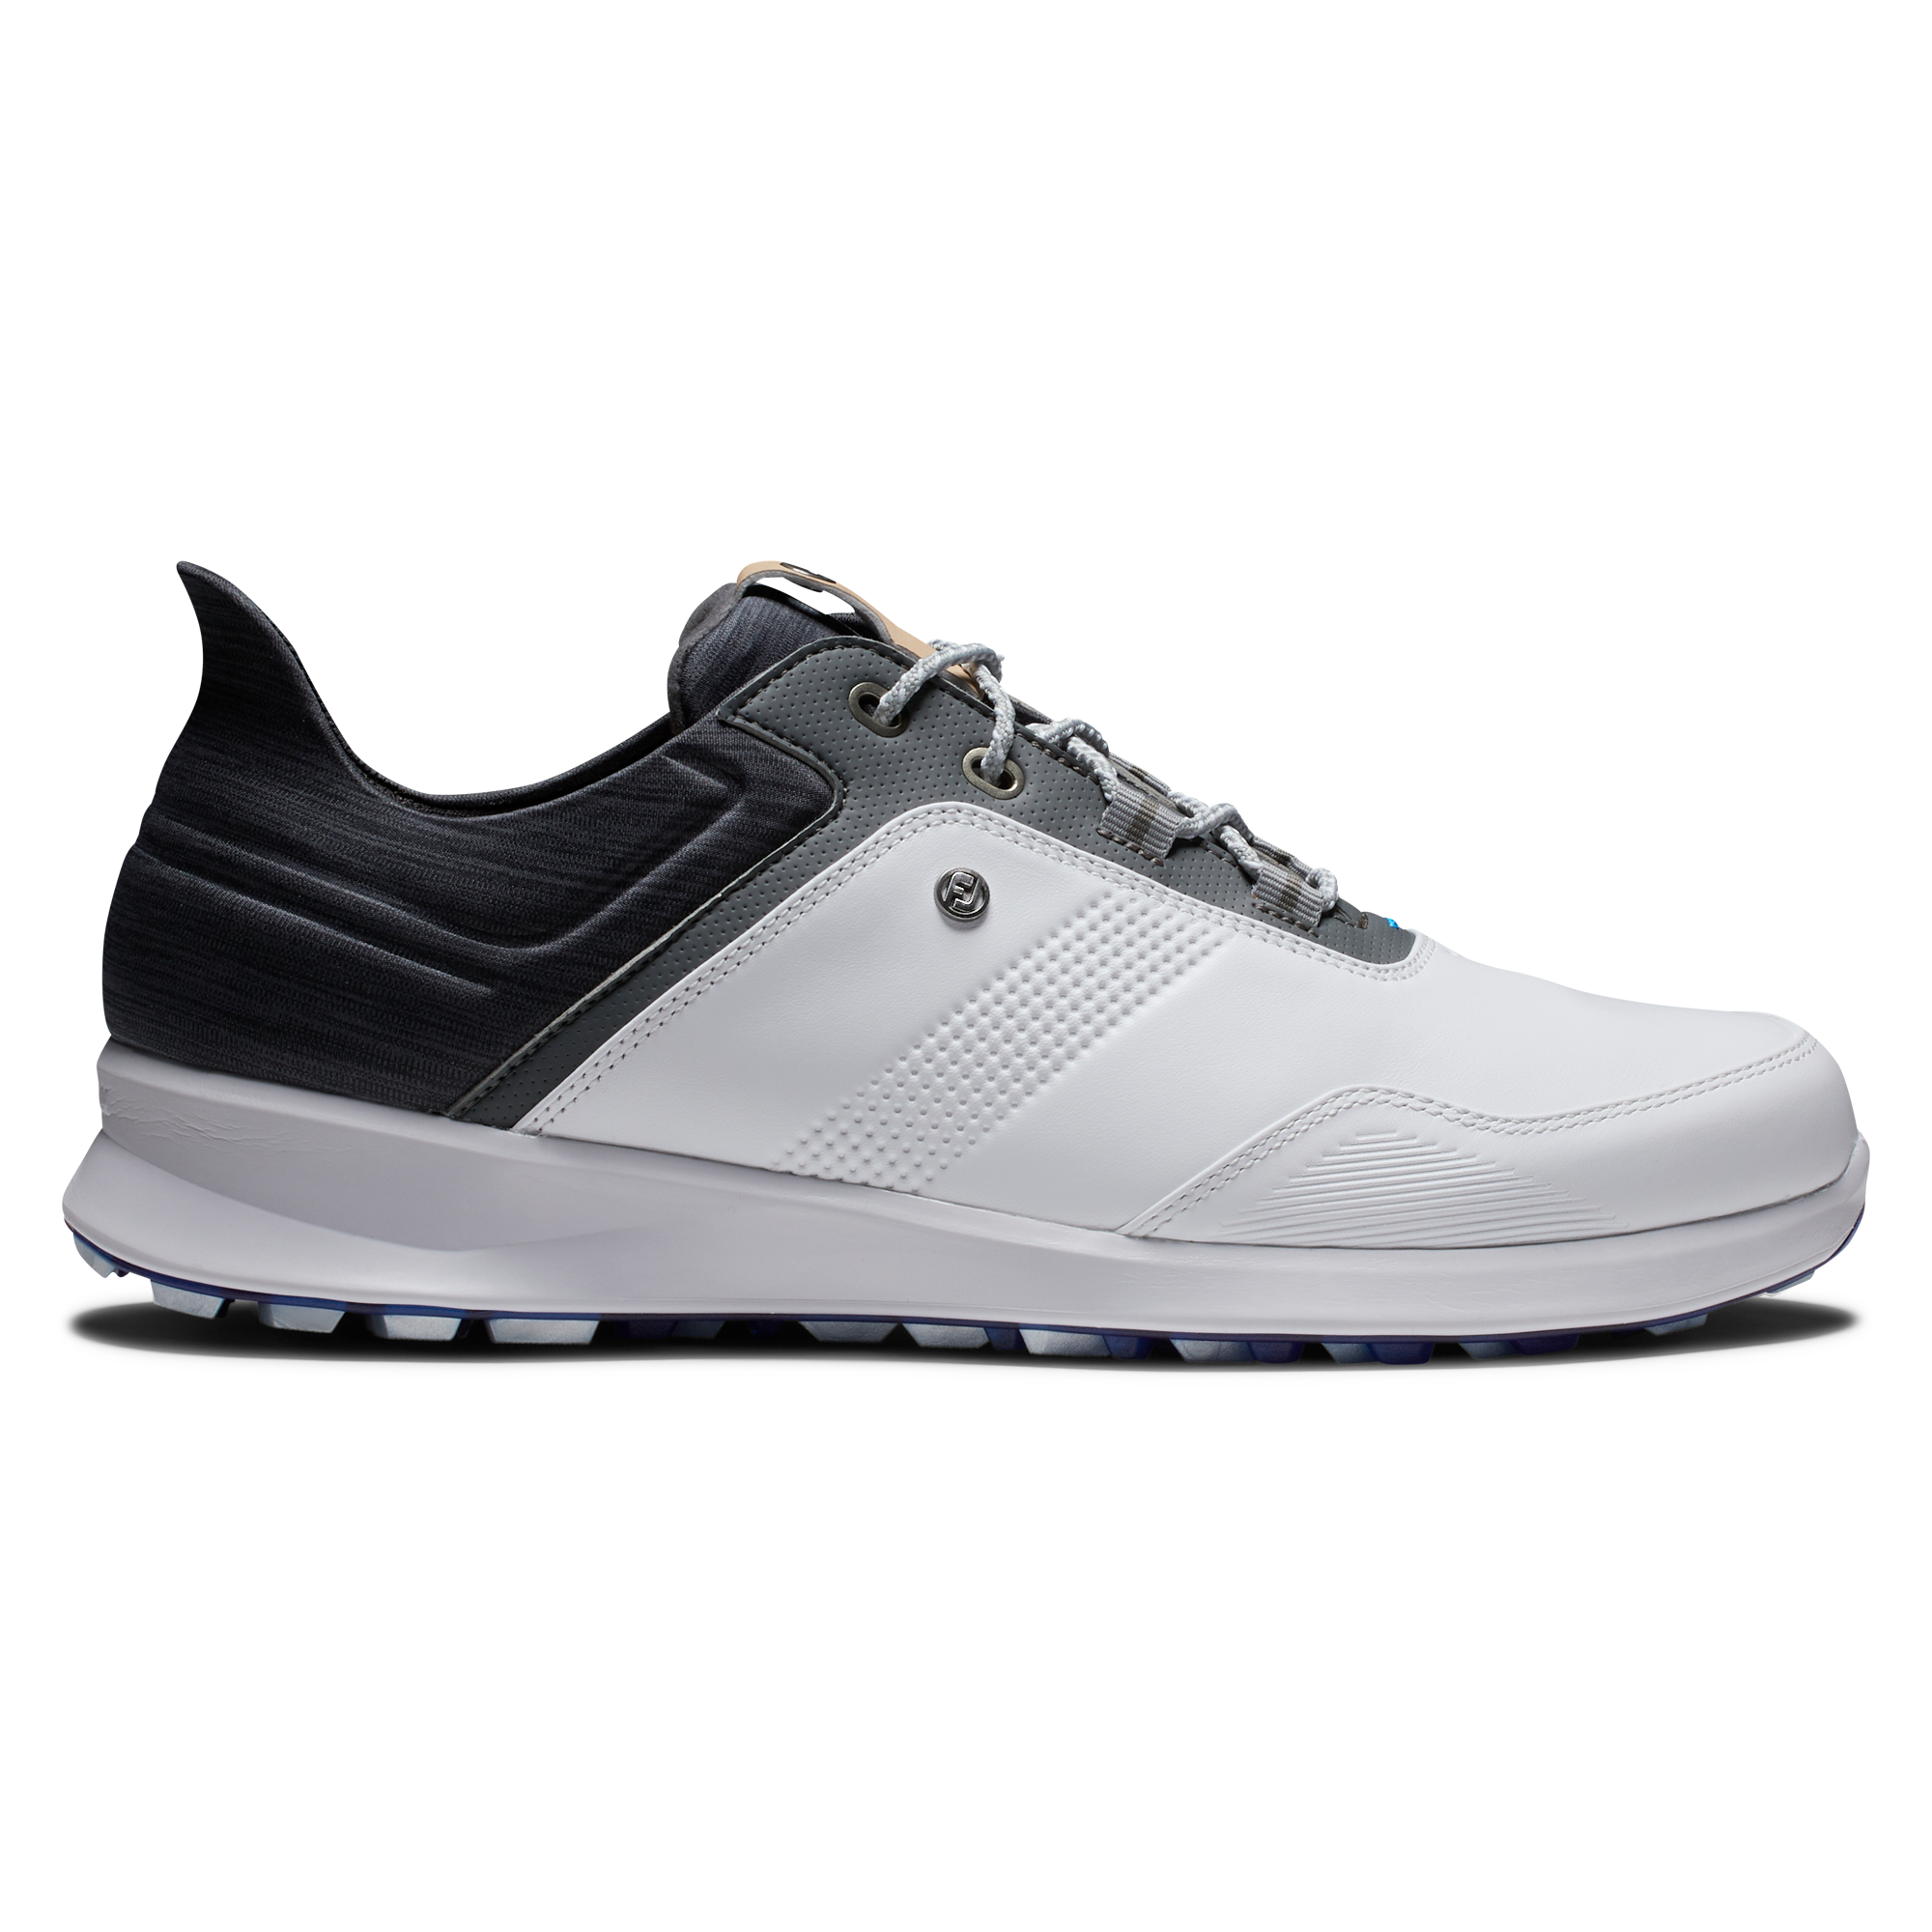 FootJoy Stratos pánské golfové boty, bílé/šedé, vel. 10 UK